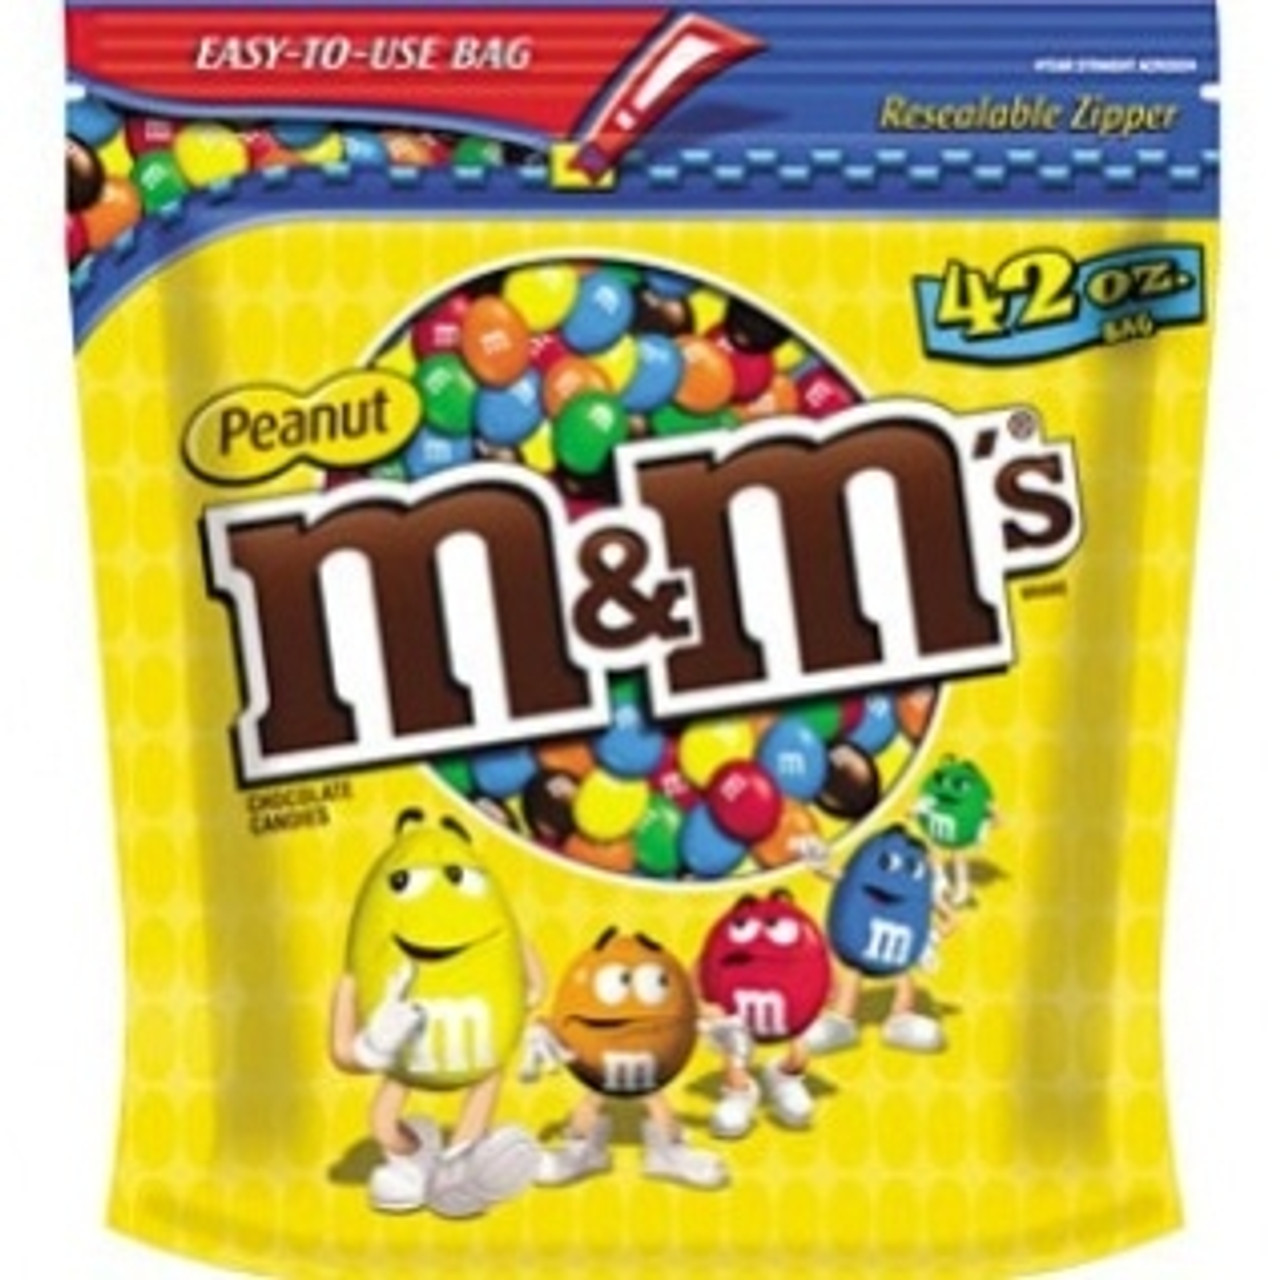 M&M's Party Bag Peanut, 38 oz, 2 Pack